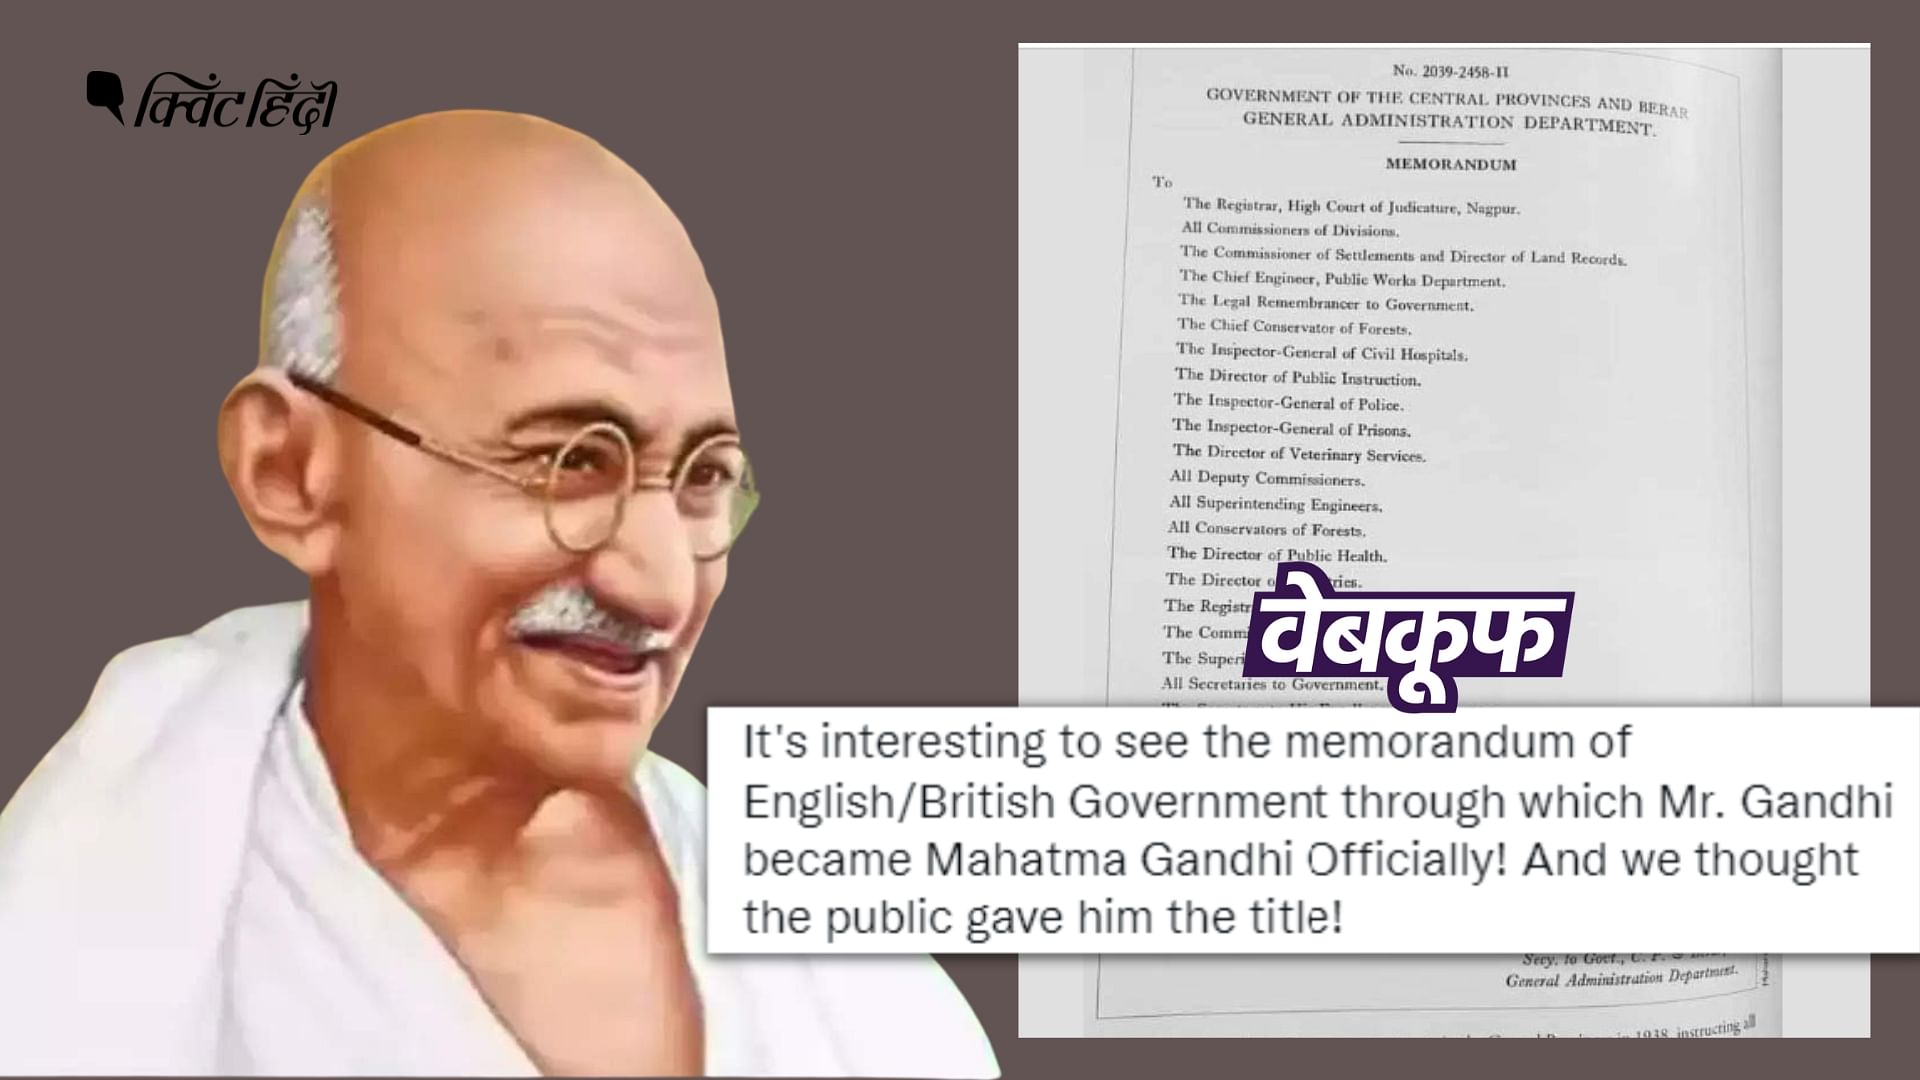 <div class="paragraphs"><p>वायरल पोस्ट में दावा किया जा रहा है कि गांधी को महात्मा की उपाधि ब्रिटिश सरकार ने दी&nbsp;</p></div>